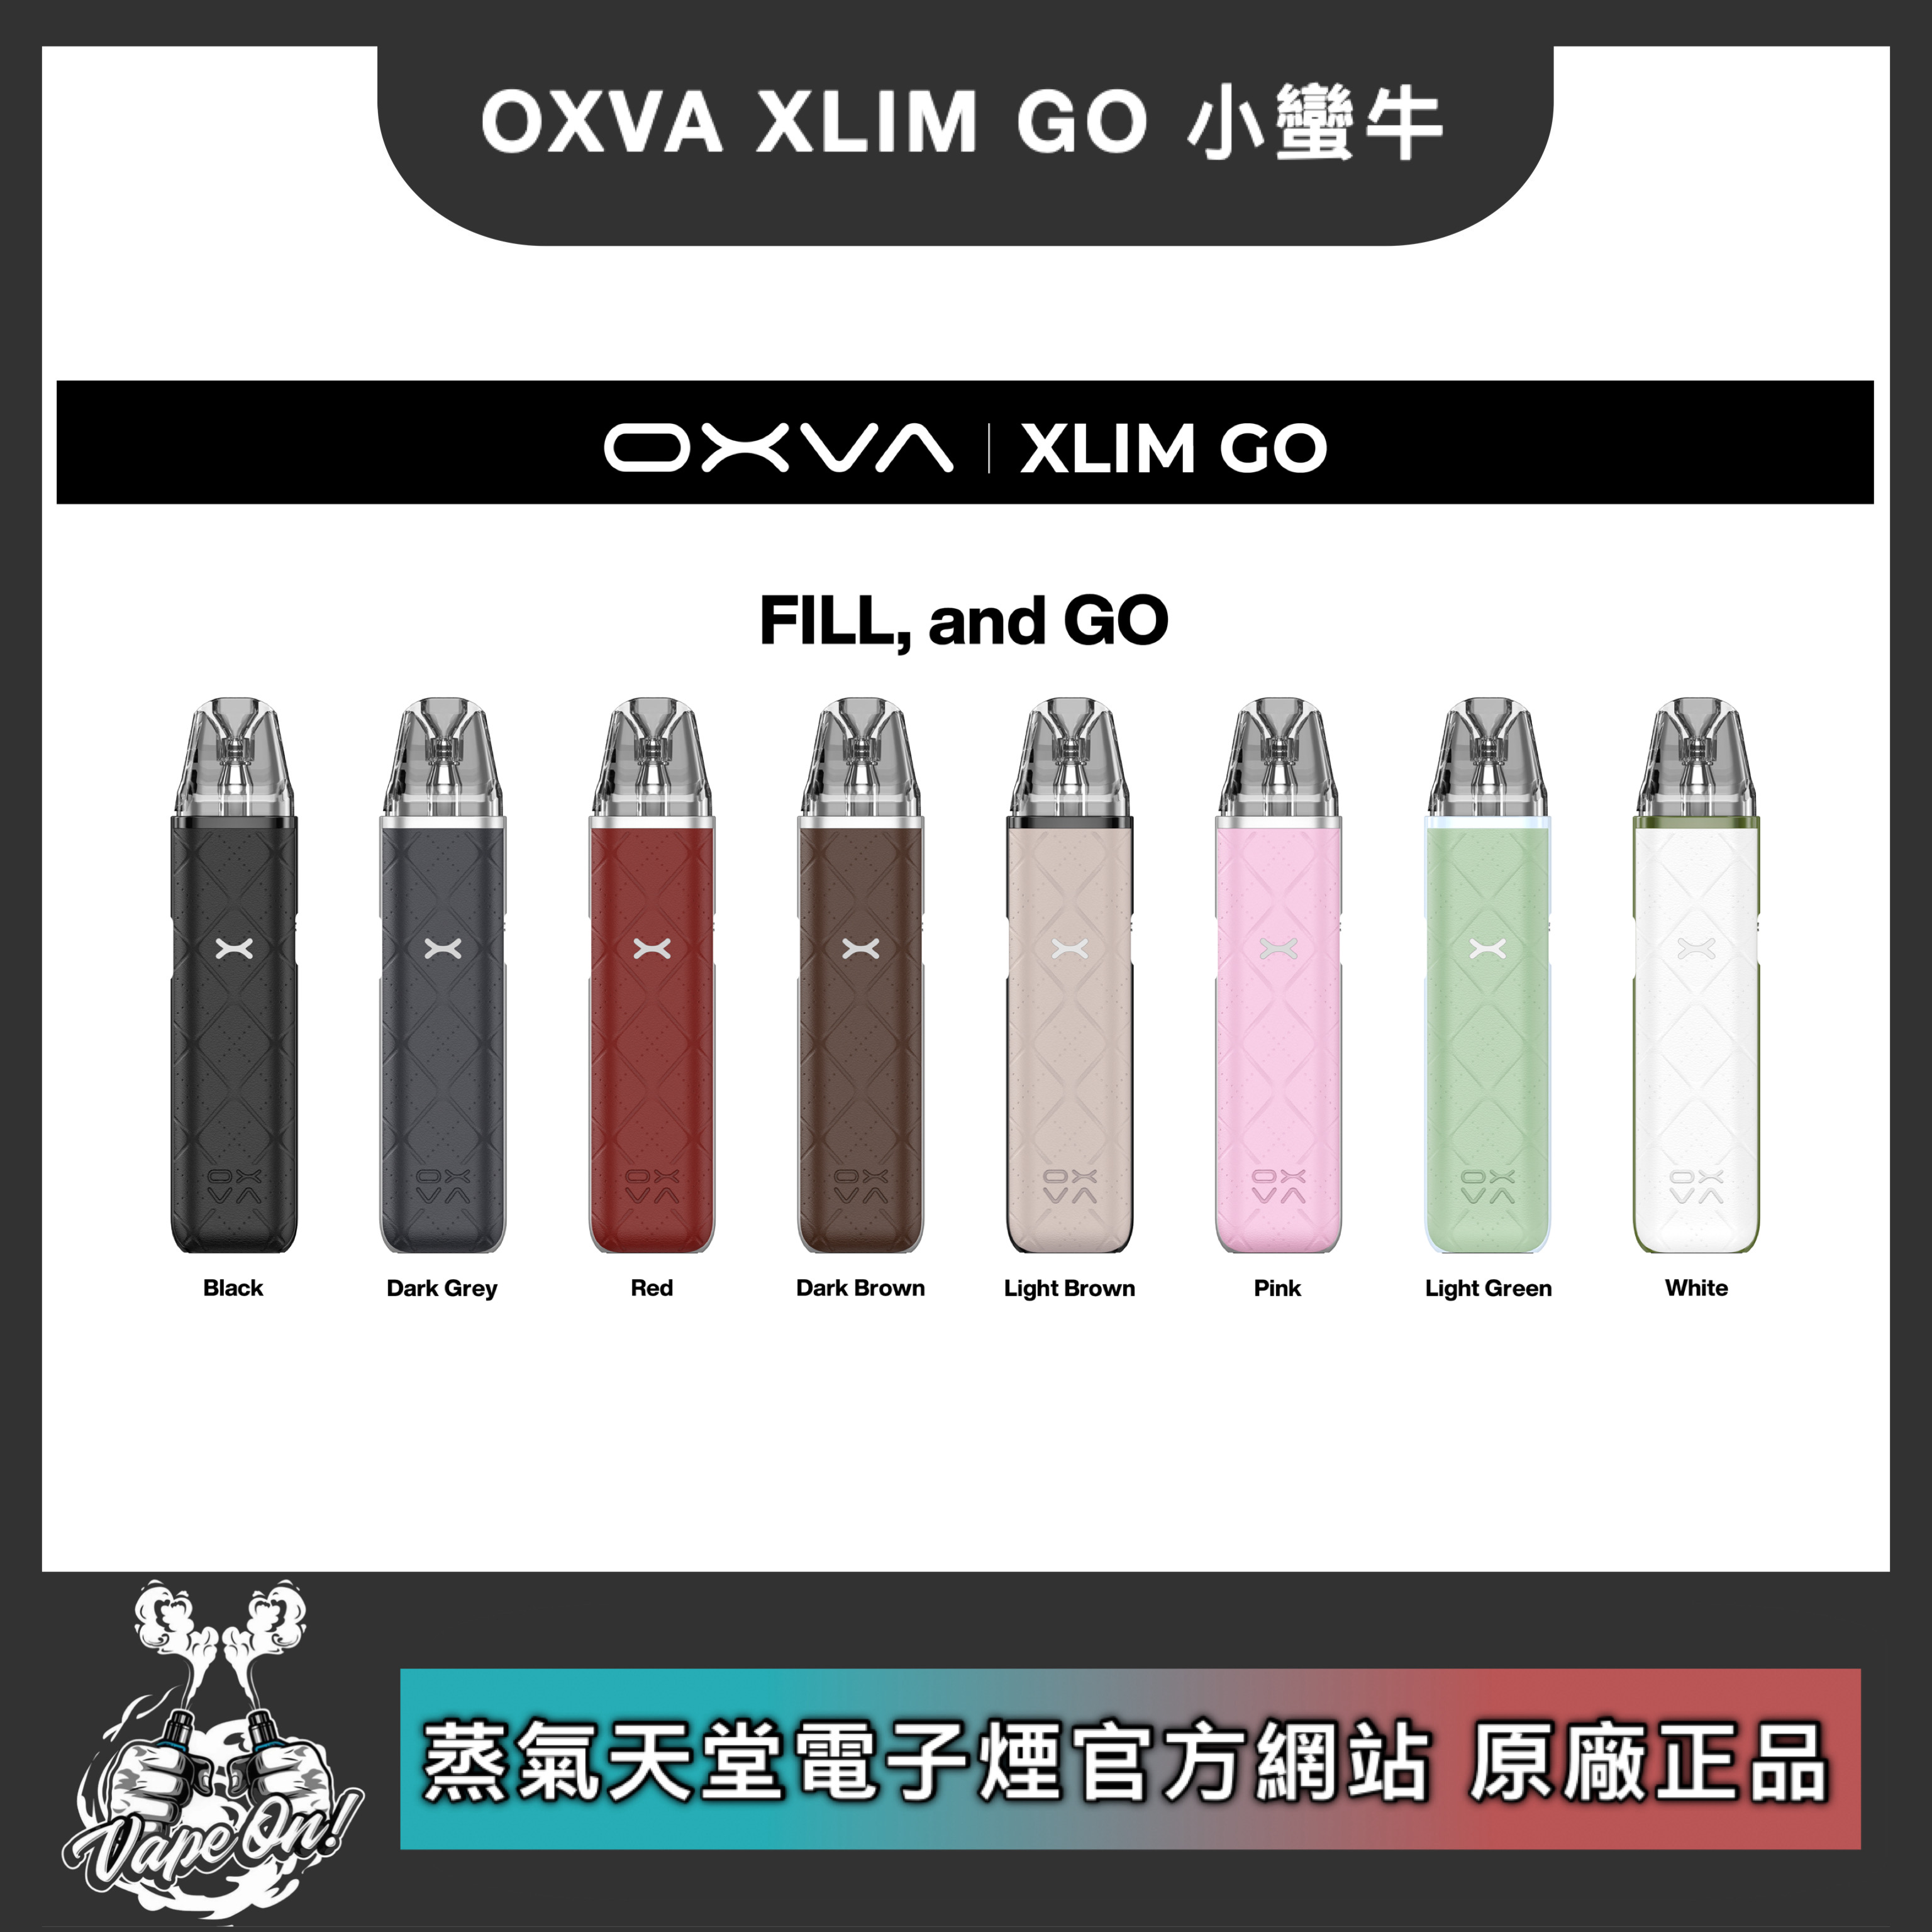 OXVA GO 小蠻牛 輕盈型小煙主機 6月上市開賣